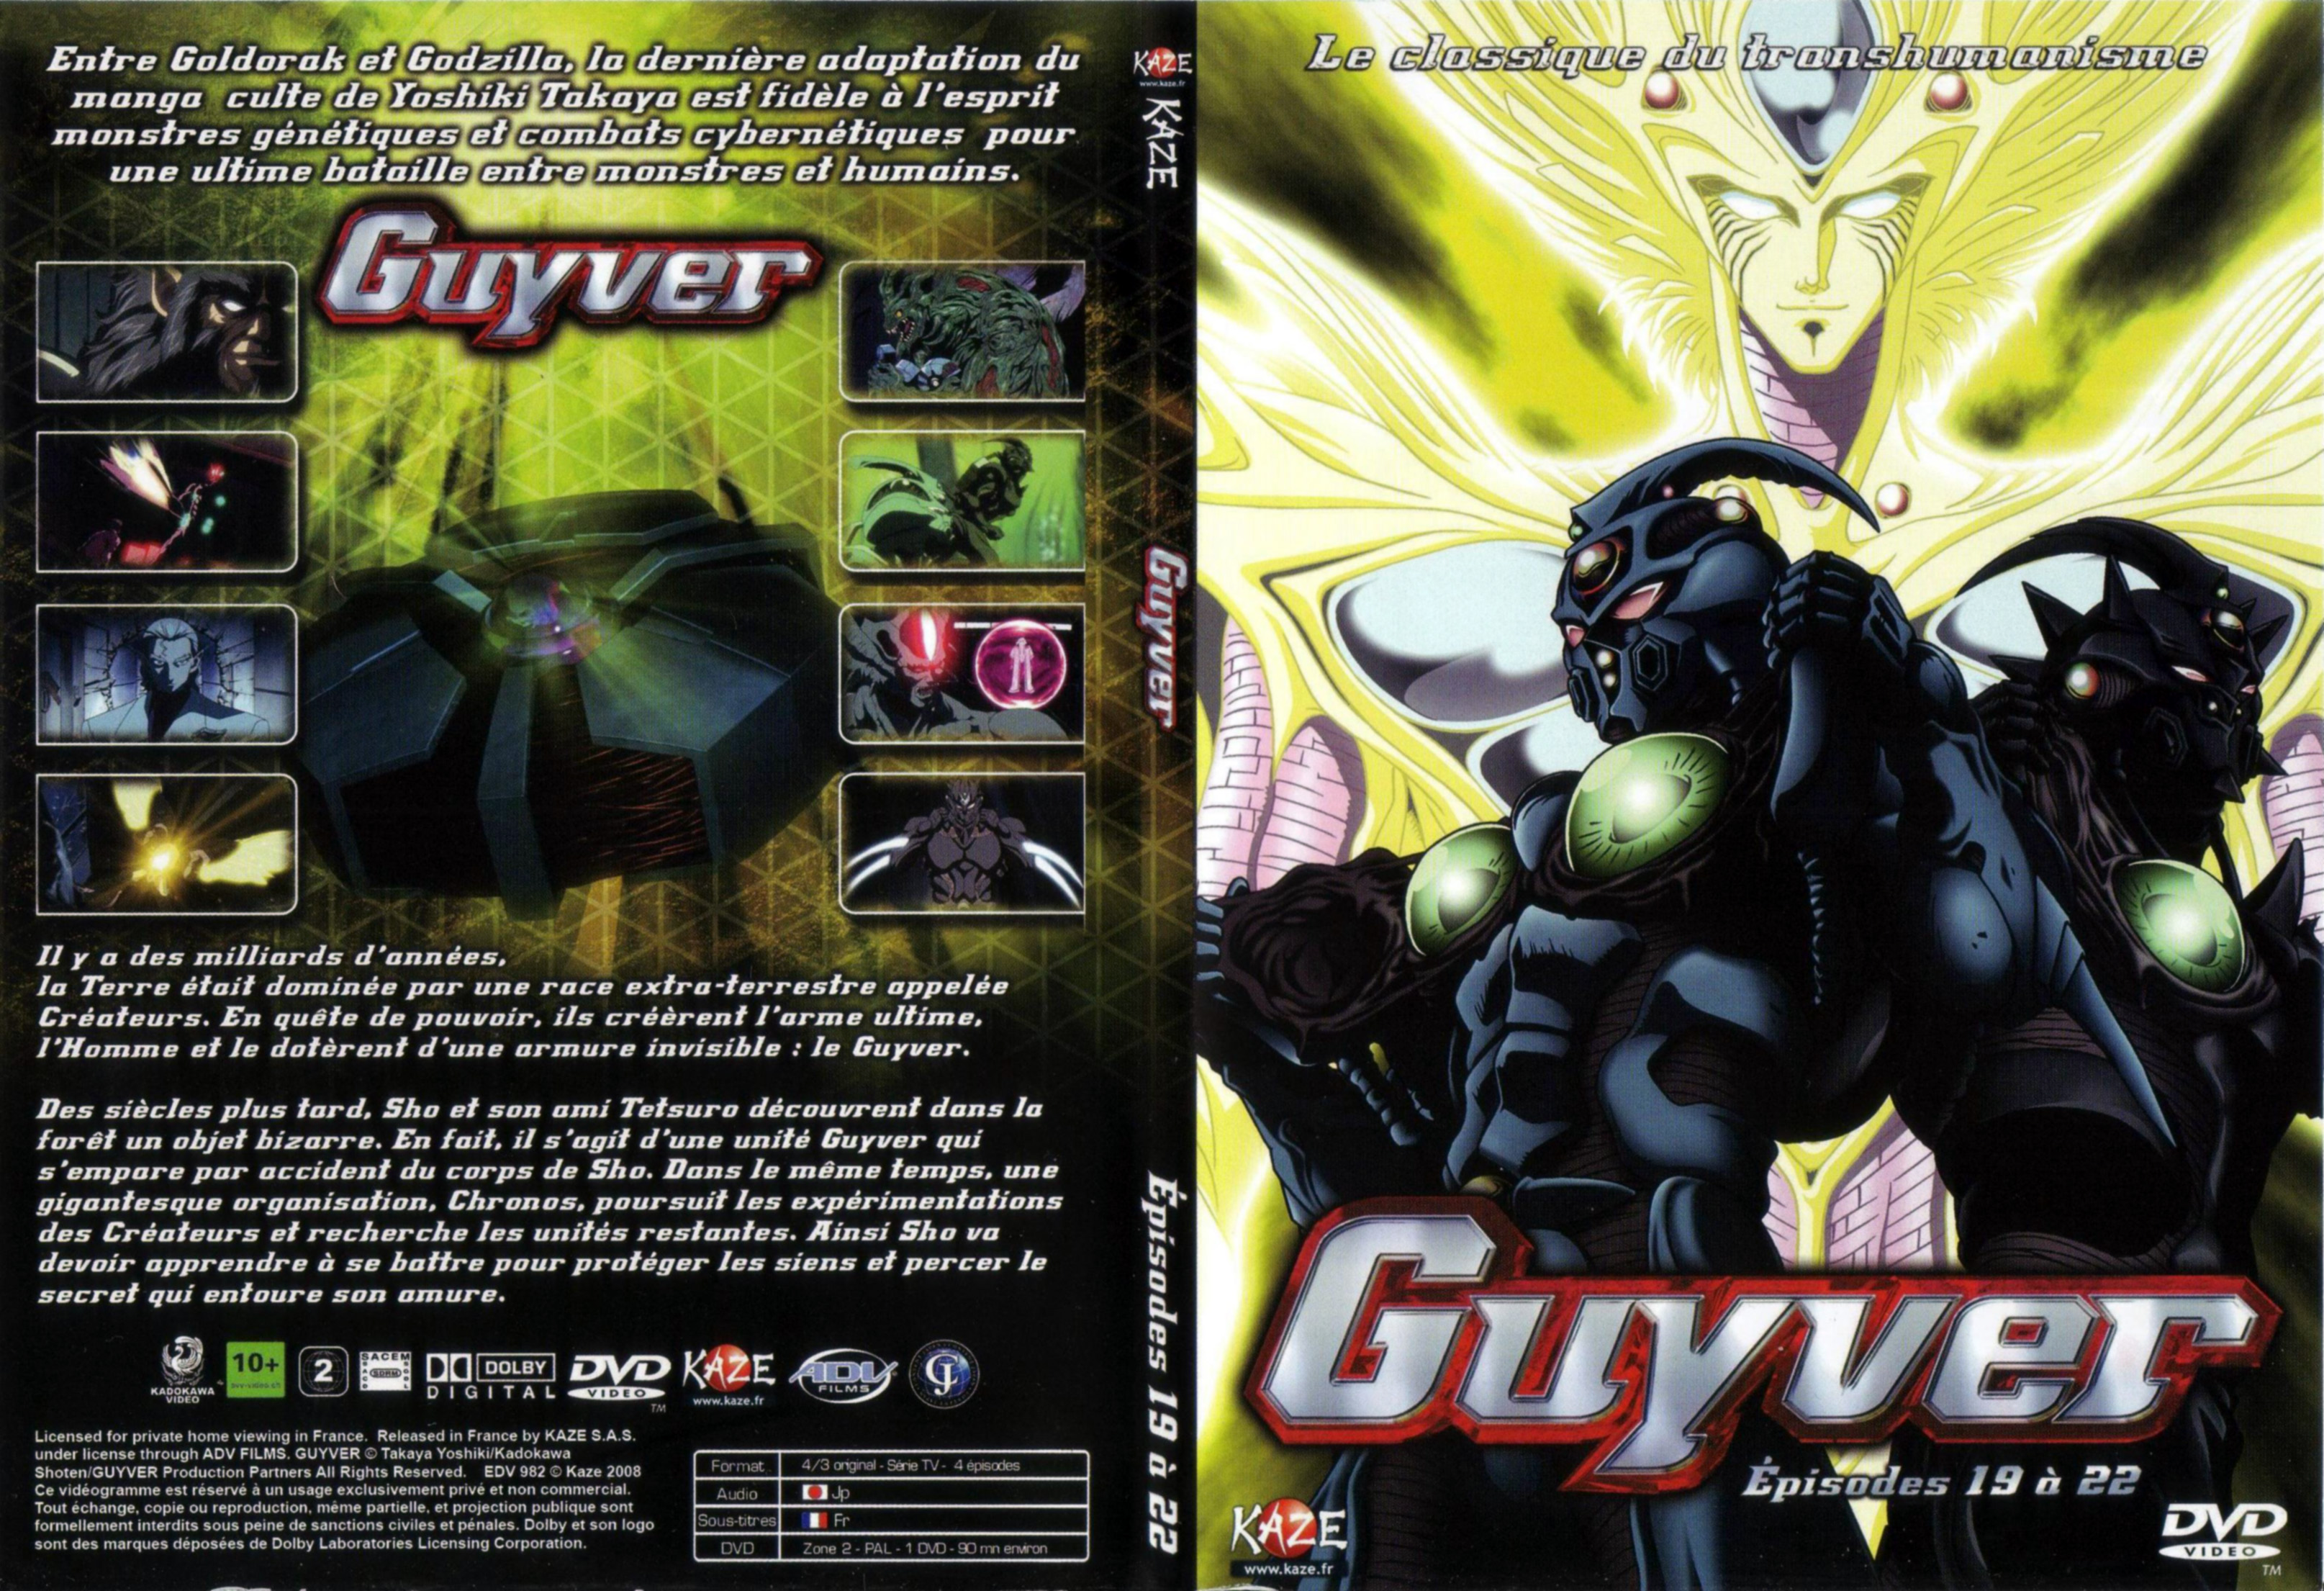 Jaquette DVD Guyver vol 05